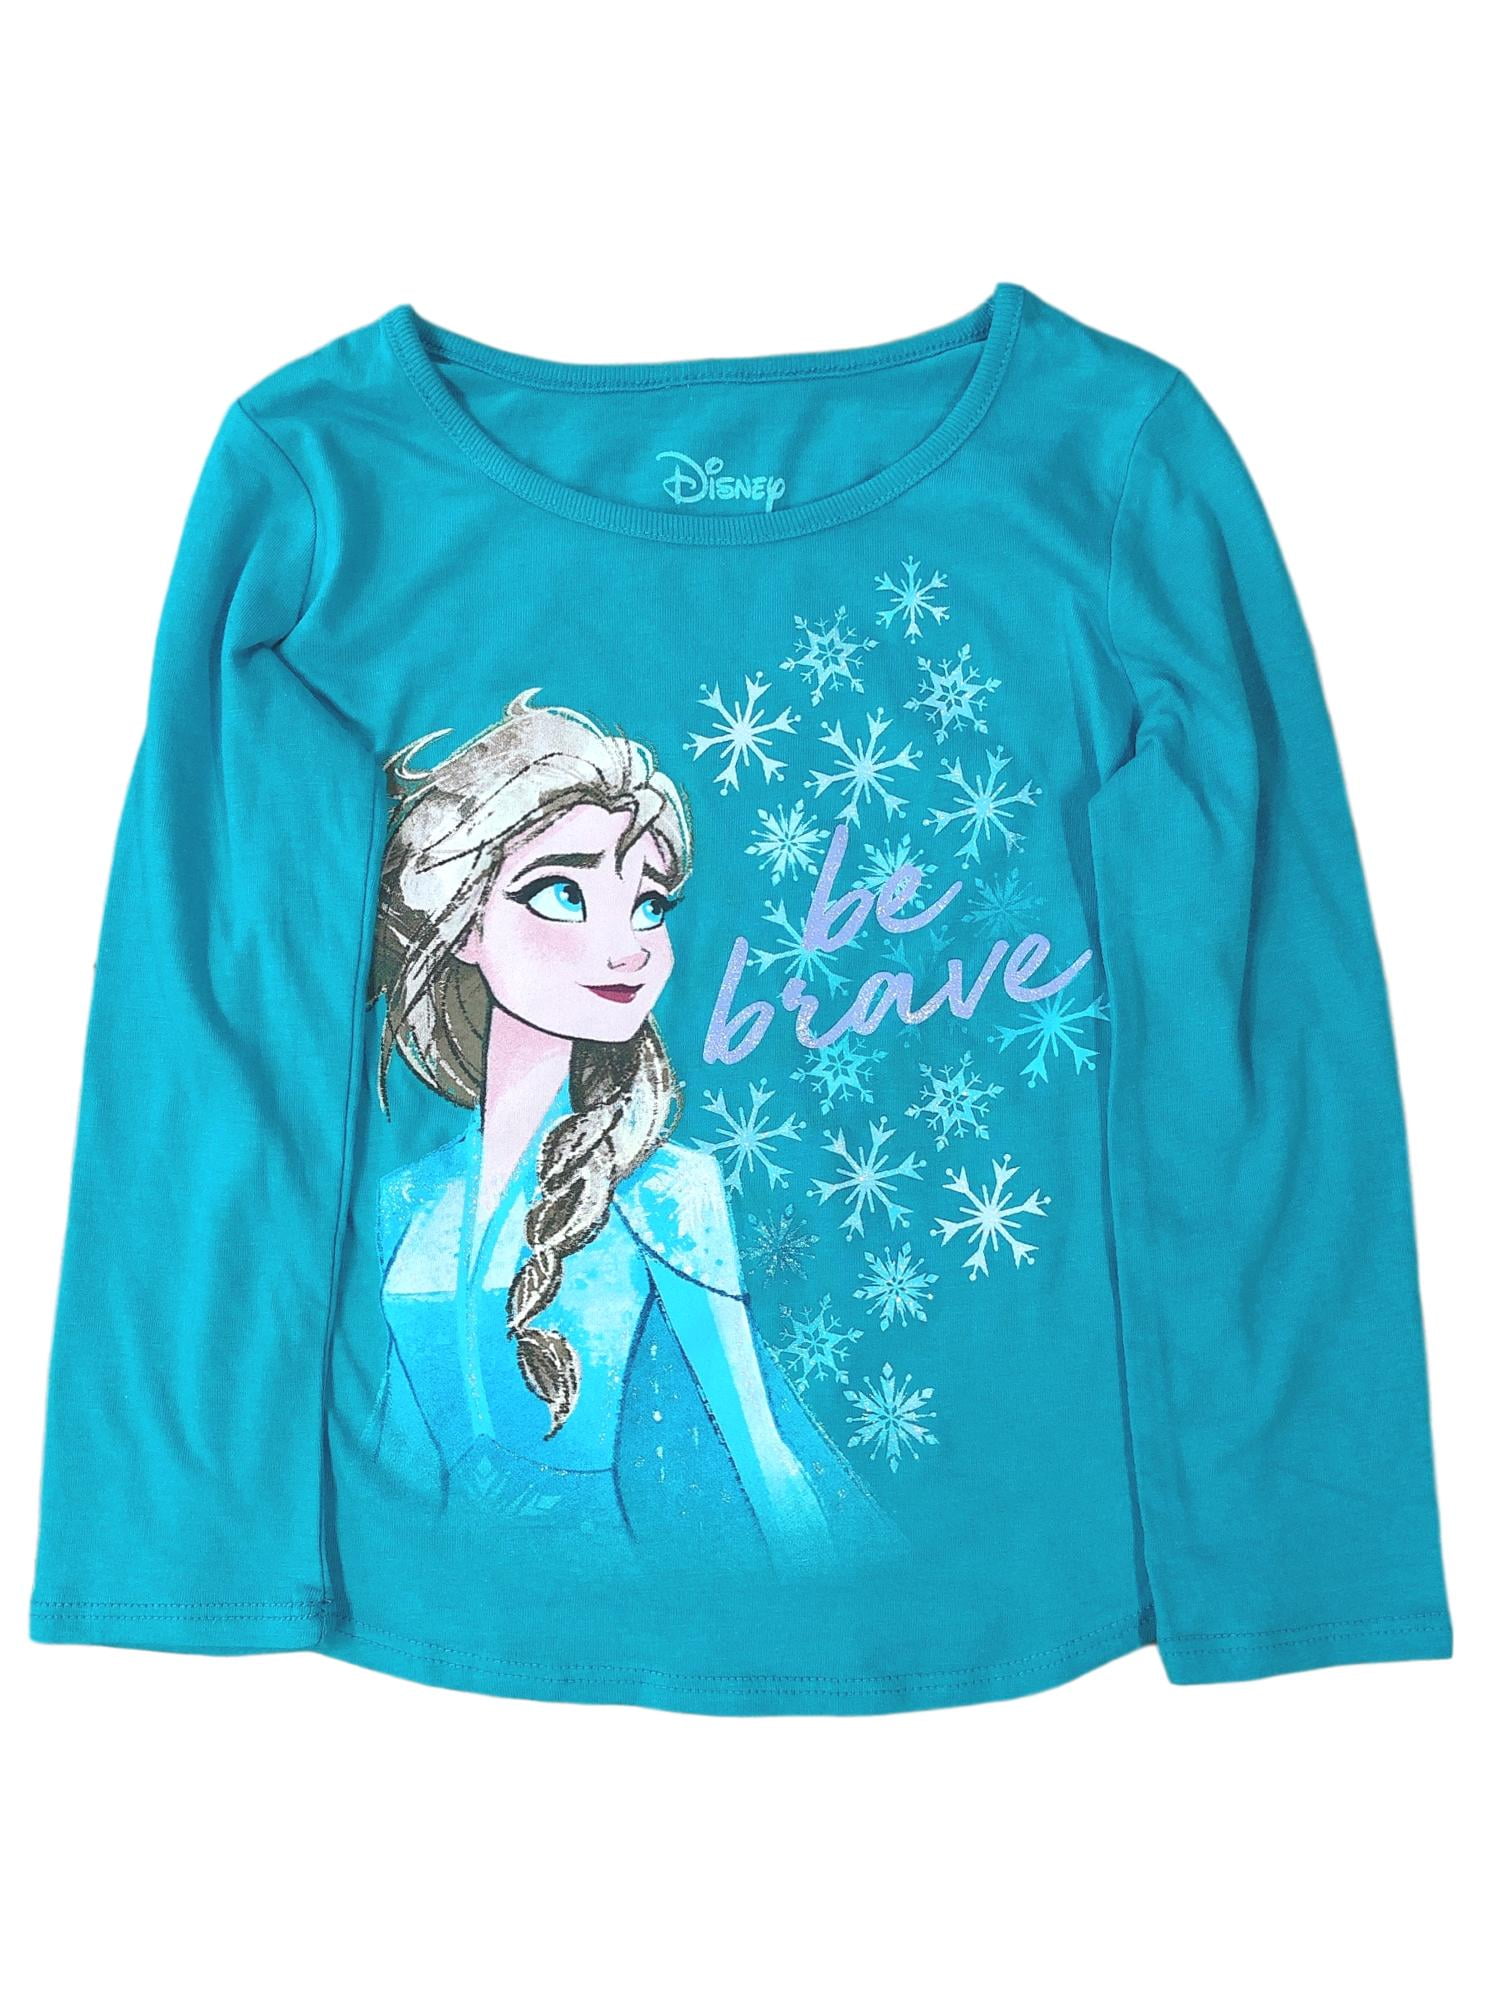 Frozen Anna Shirt Disney Princess Vogue Elsa T-Shirt Frozen T-Shirt 59784